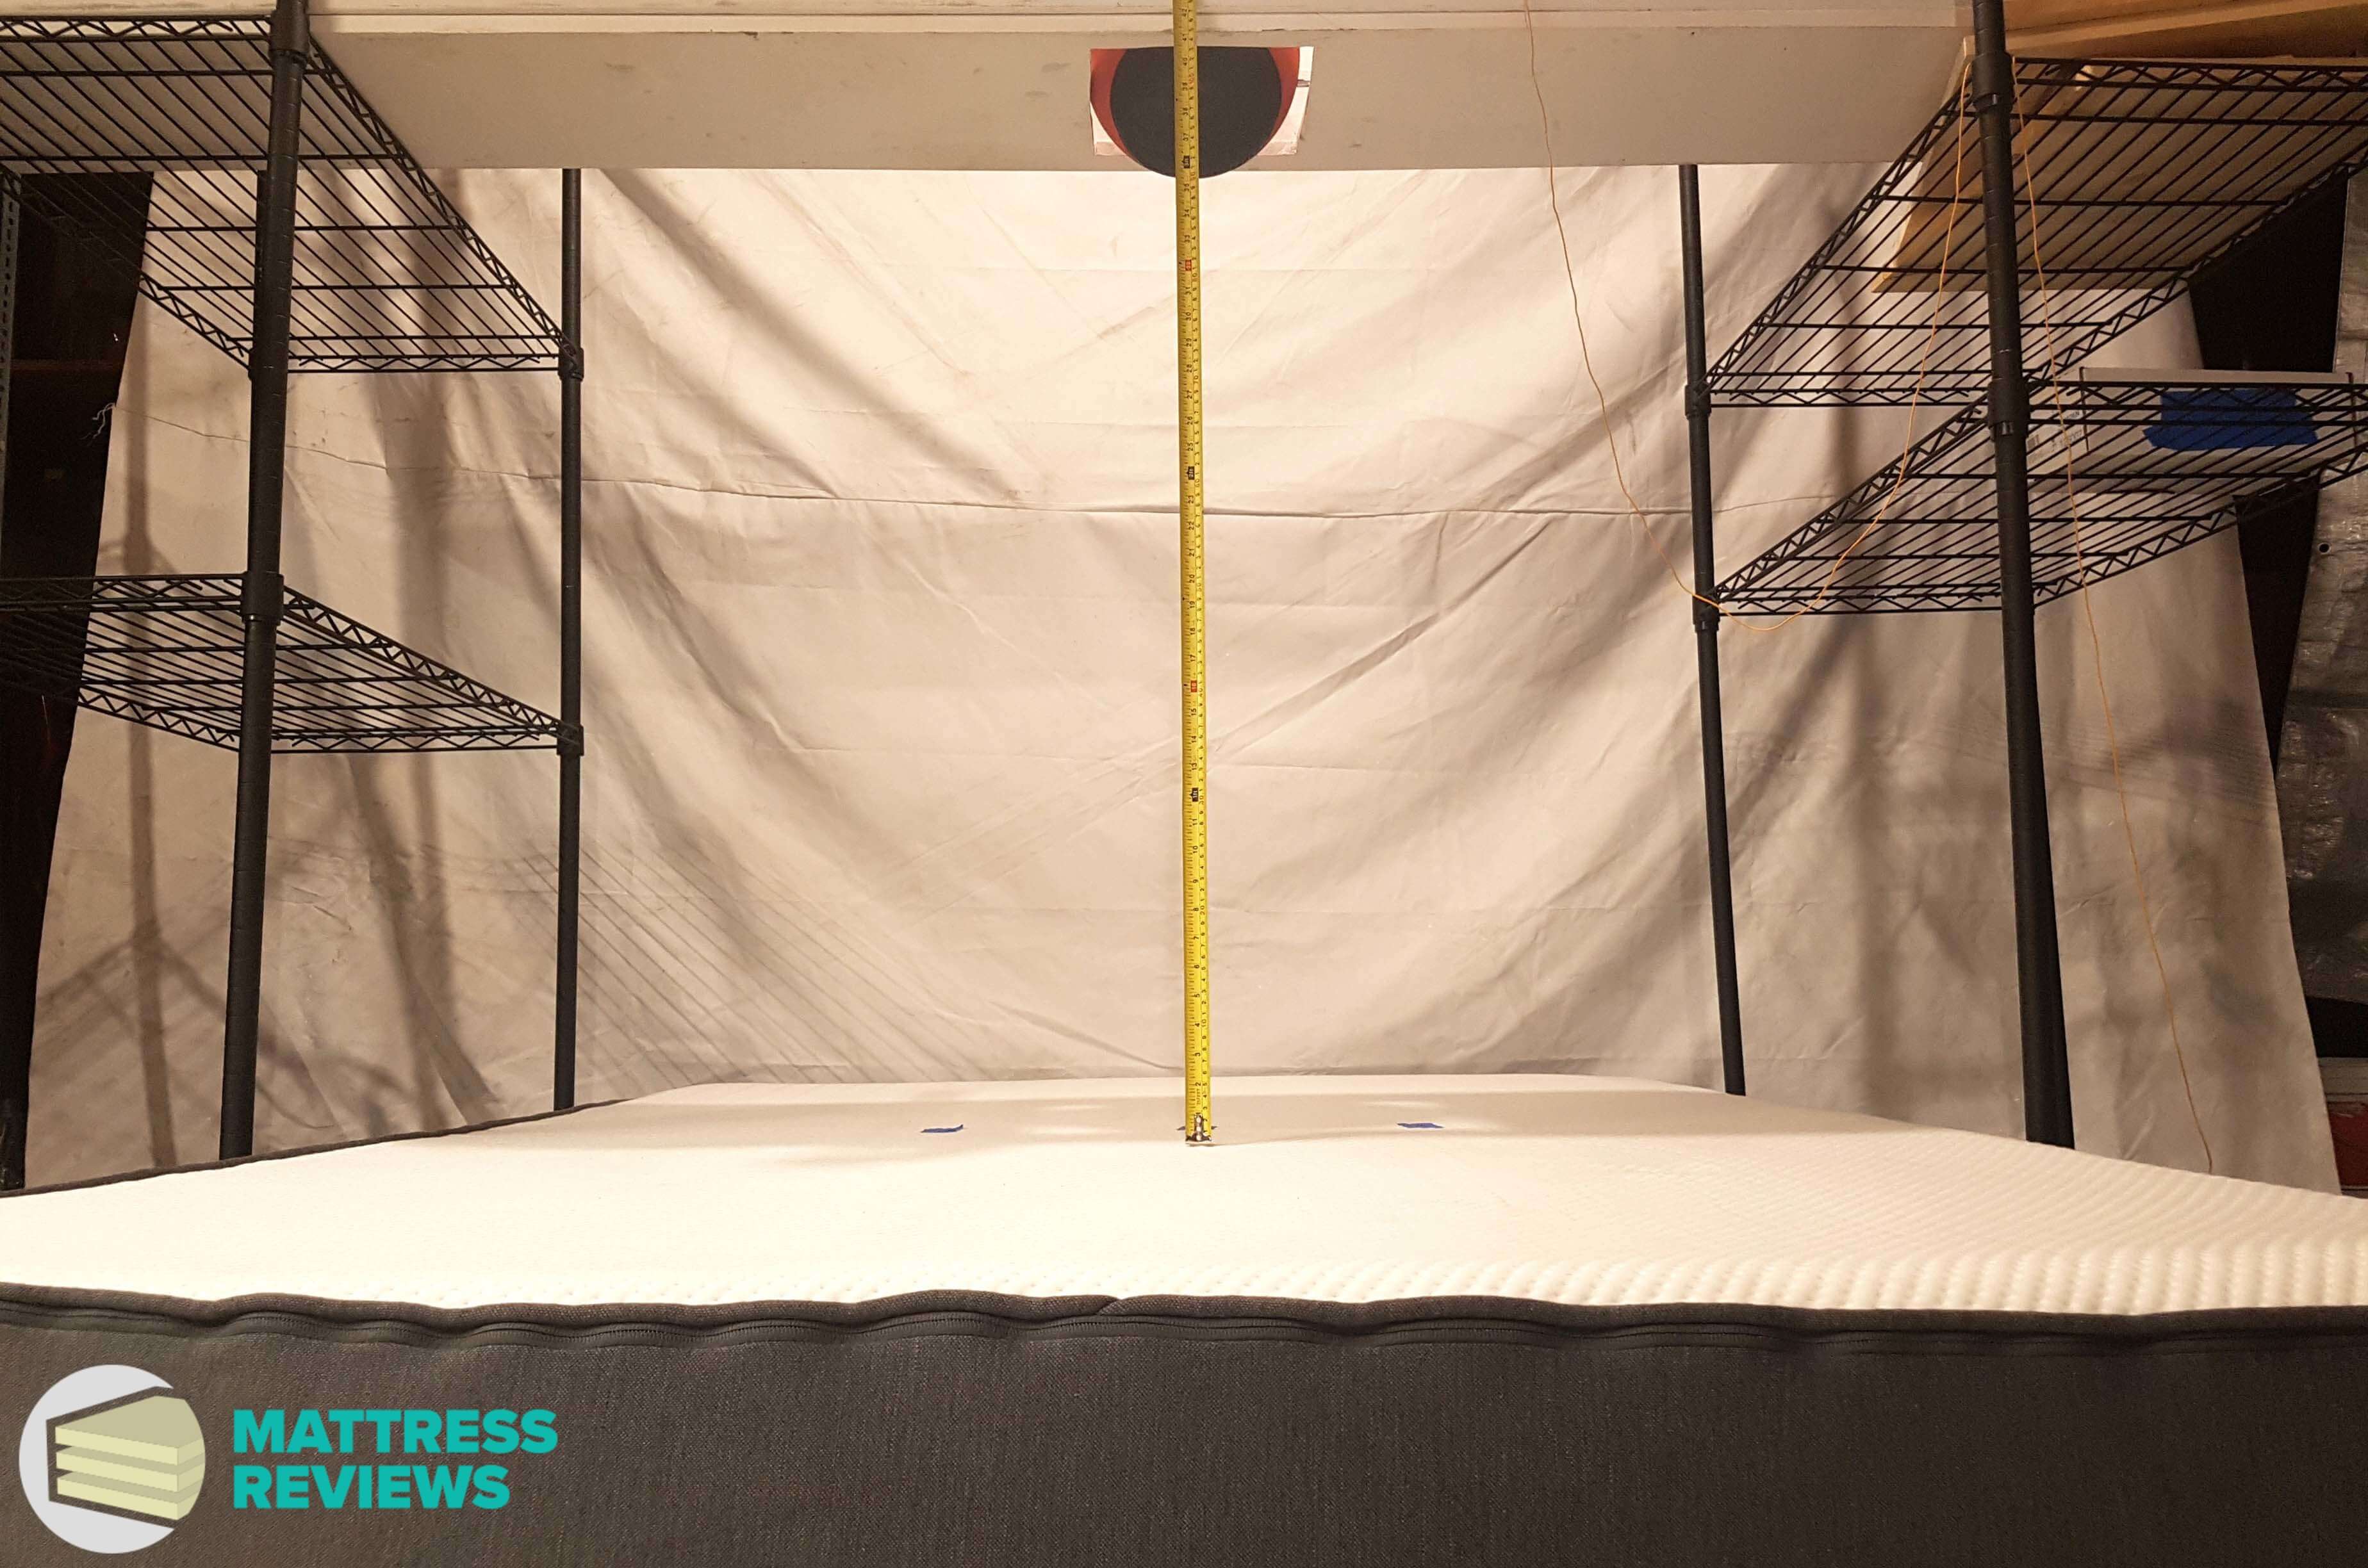 Image of the Casper mattress bounce test.